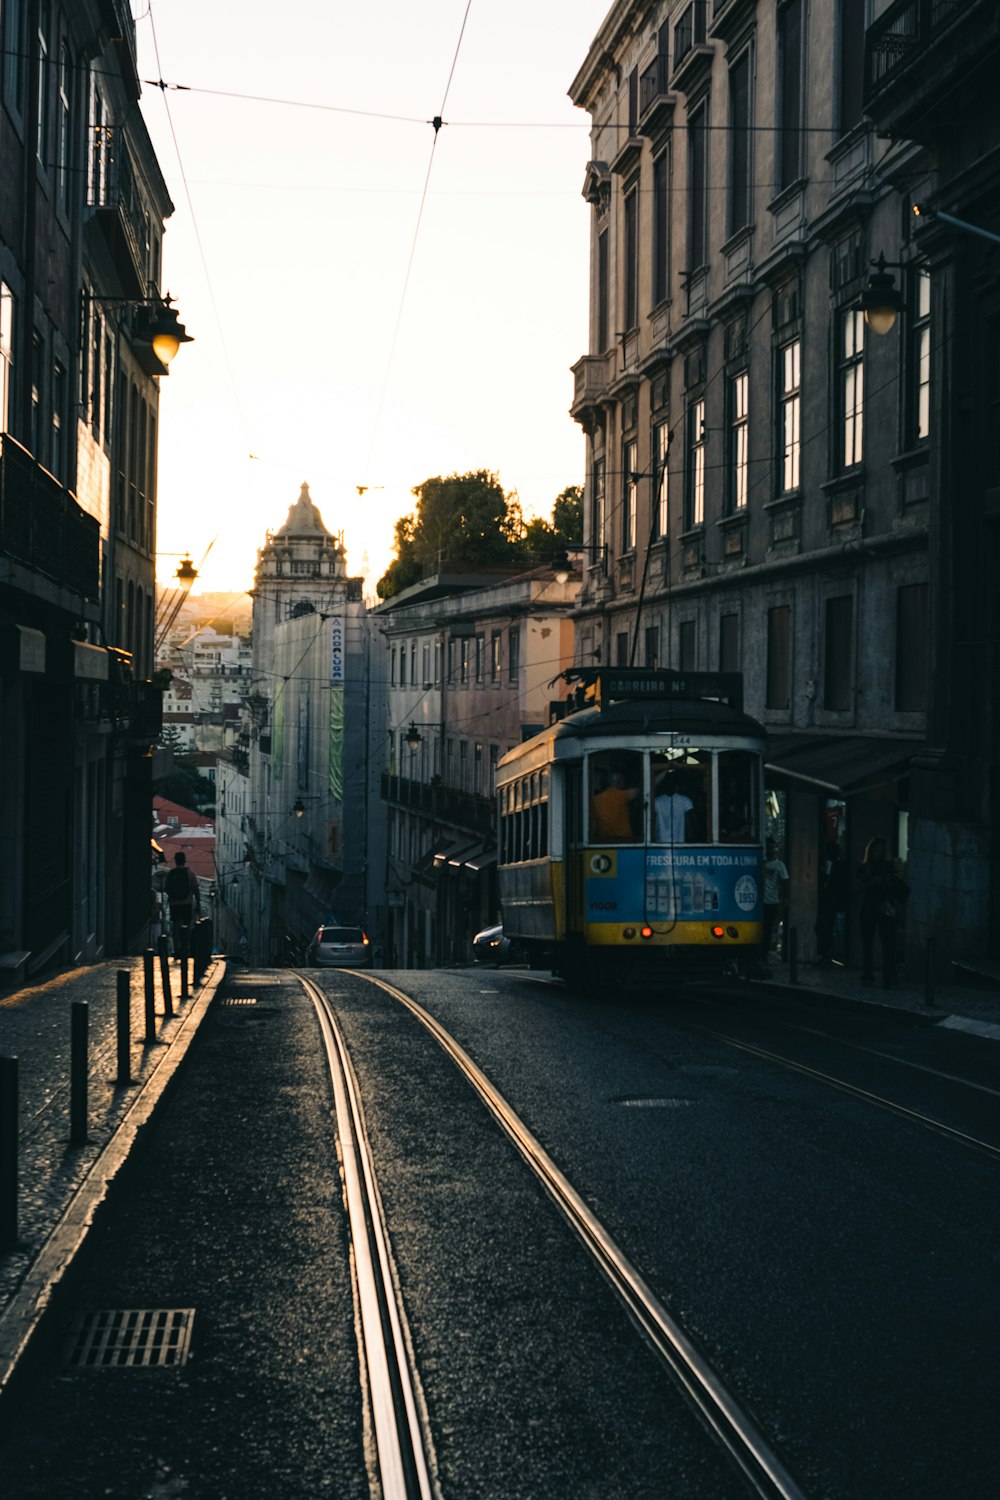 a trolley on a street